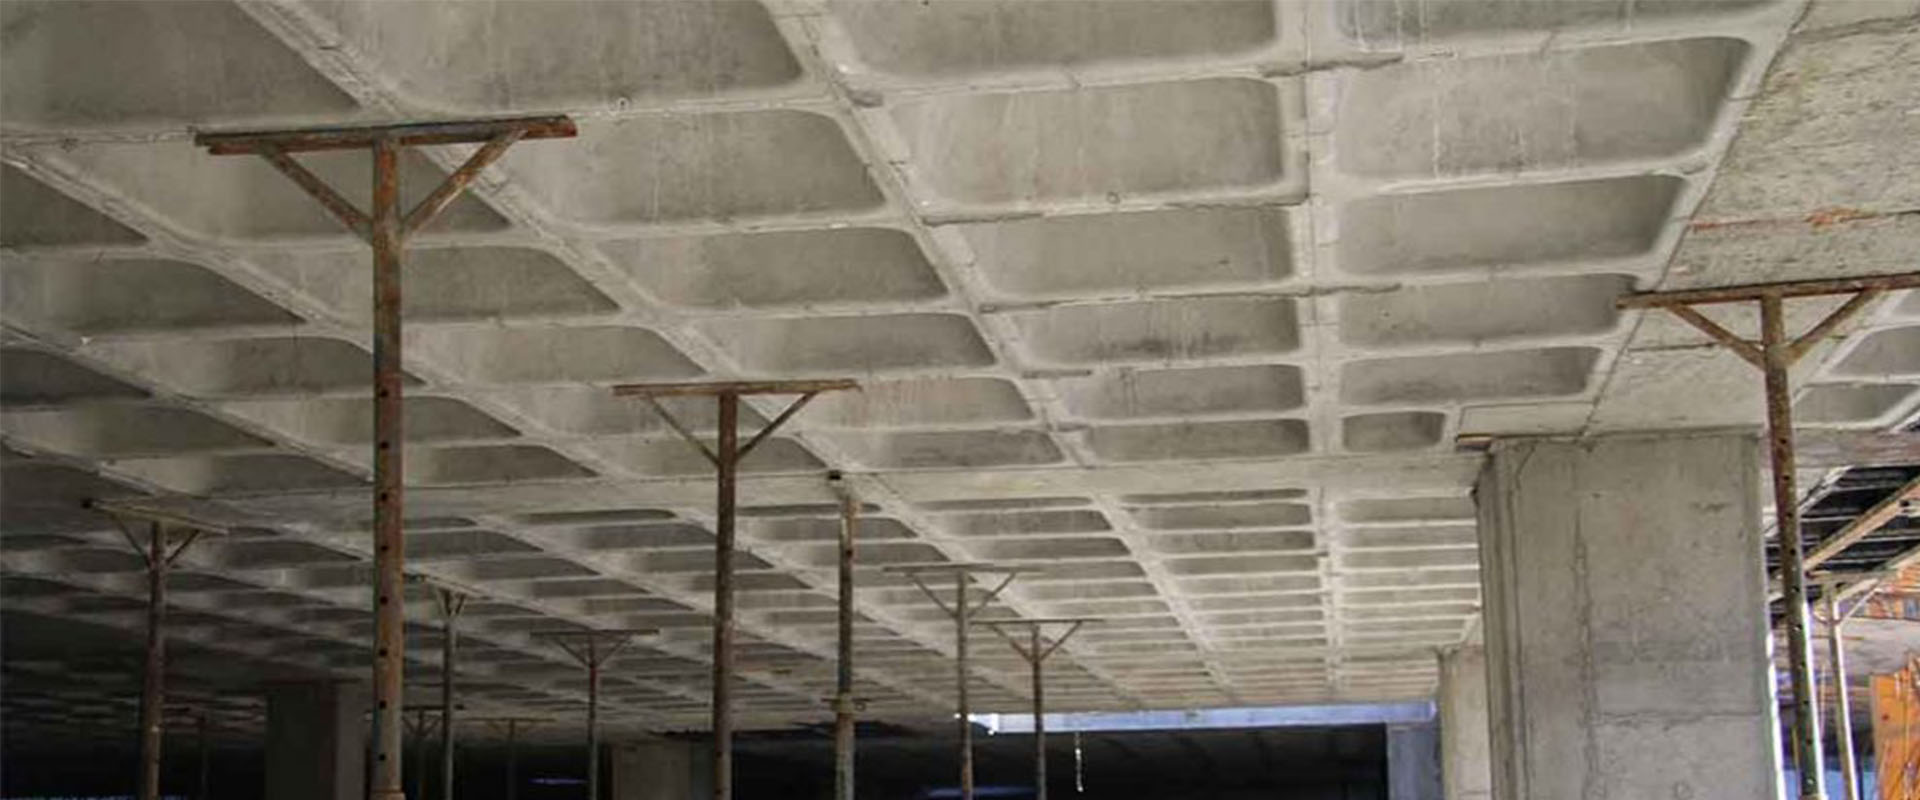 تولید سقف وافل مطابق آخرین استانداردهای کیفیت